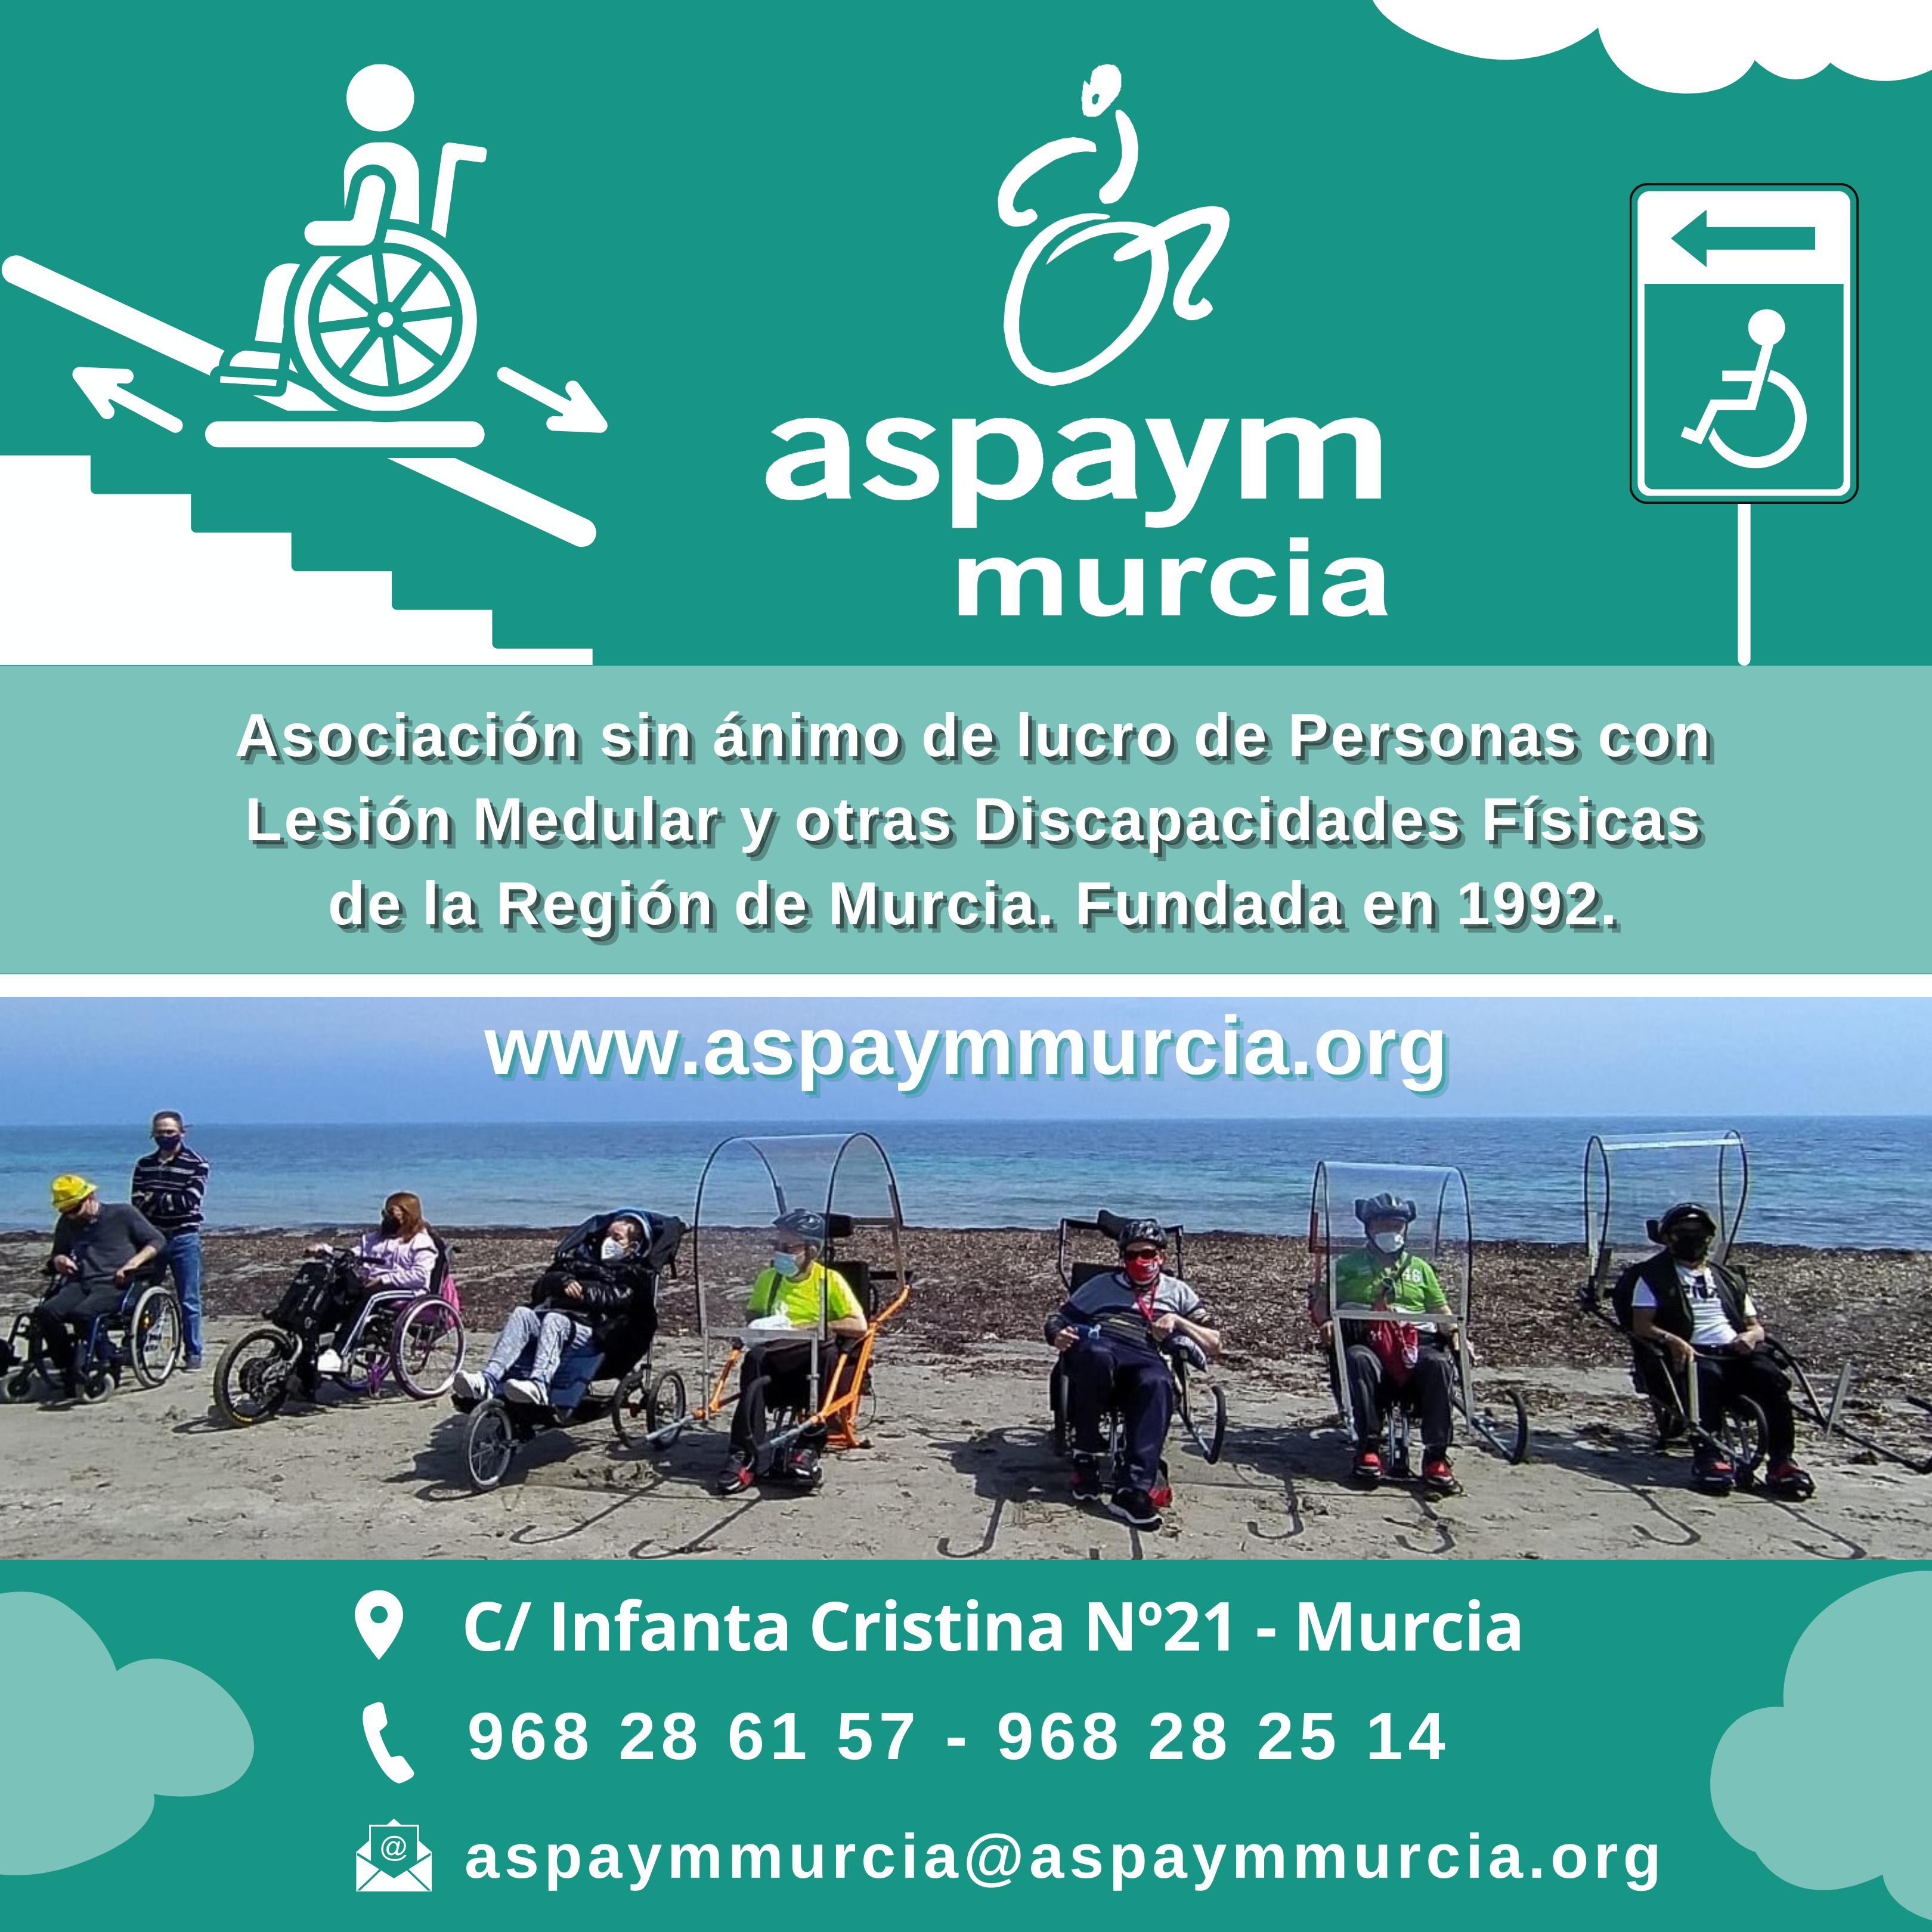 Publicidad sobre la entidad de Aspaym Murcia. Qué hacemos y donde encontrarnos.